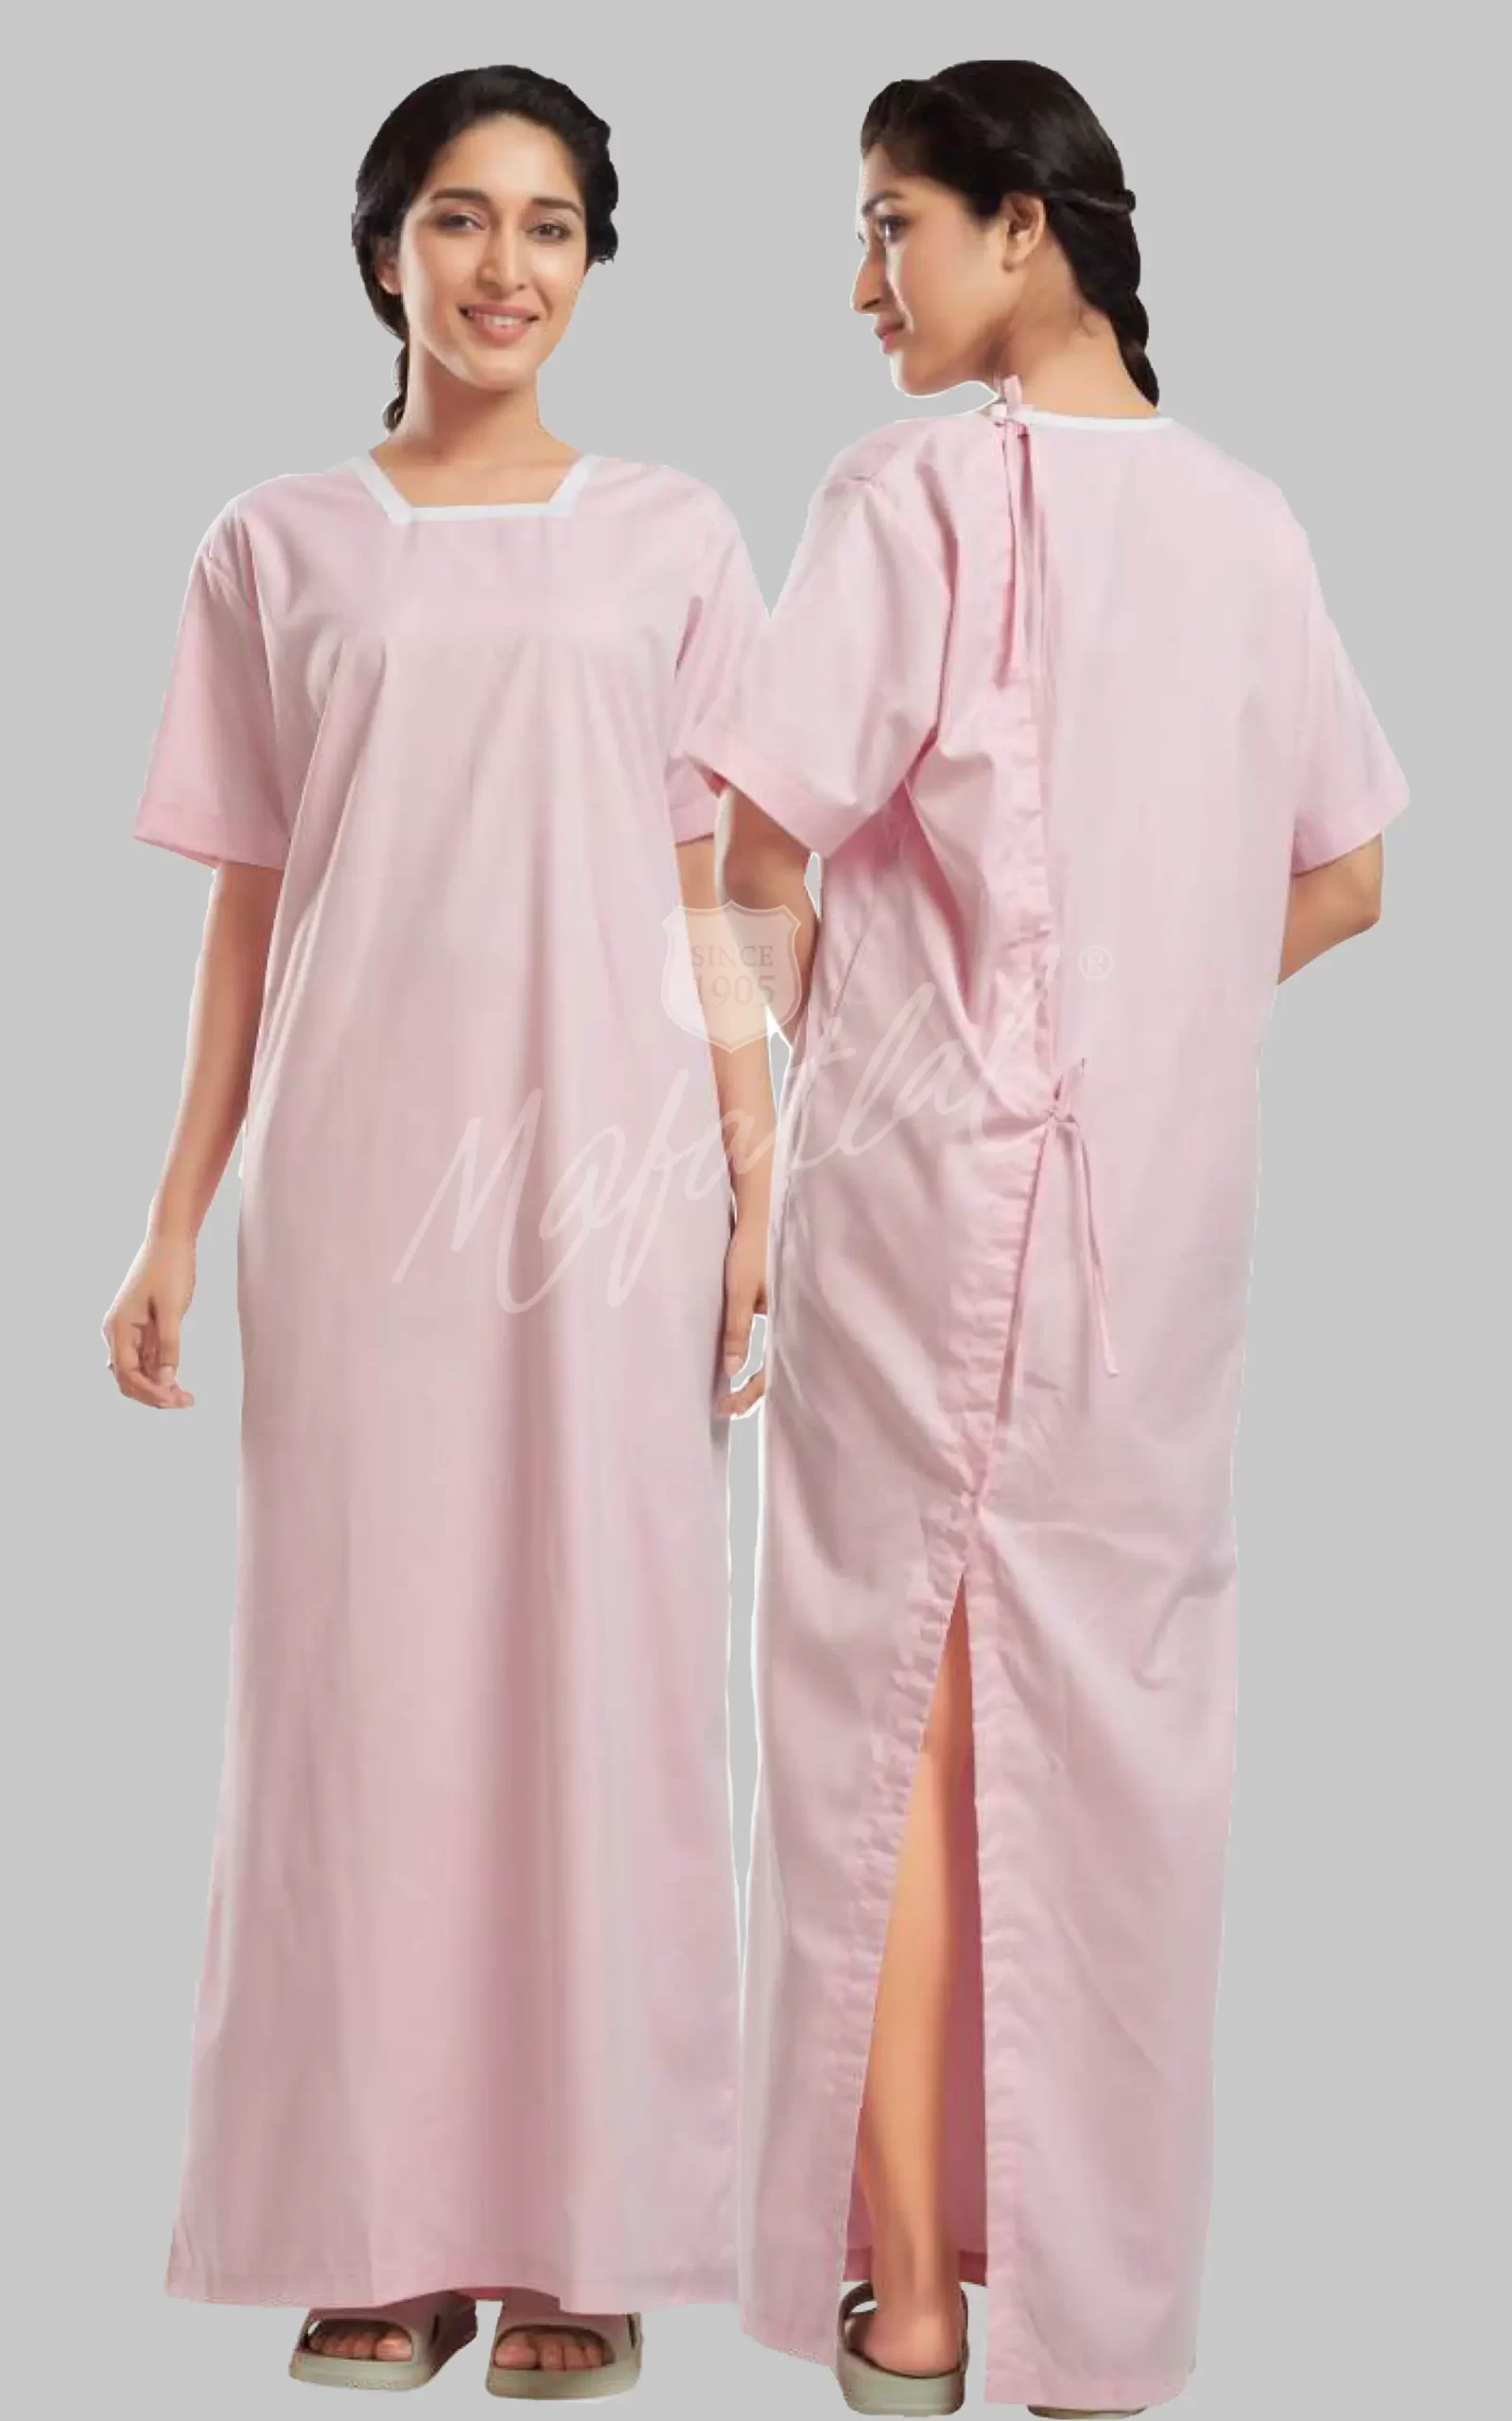 uniform-hospital-1female-patient-pink